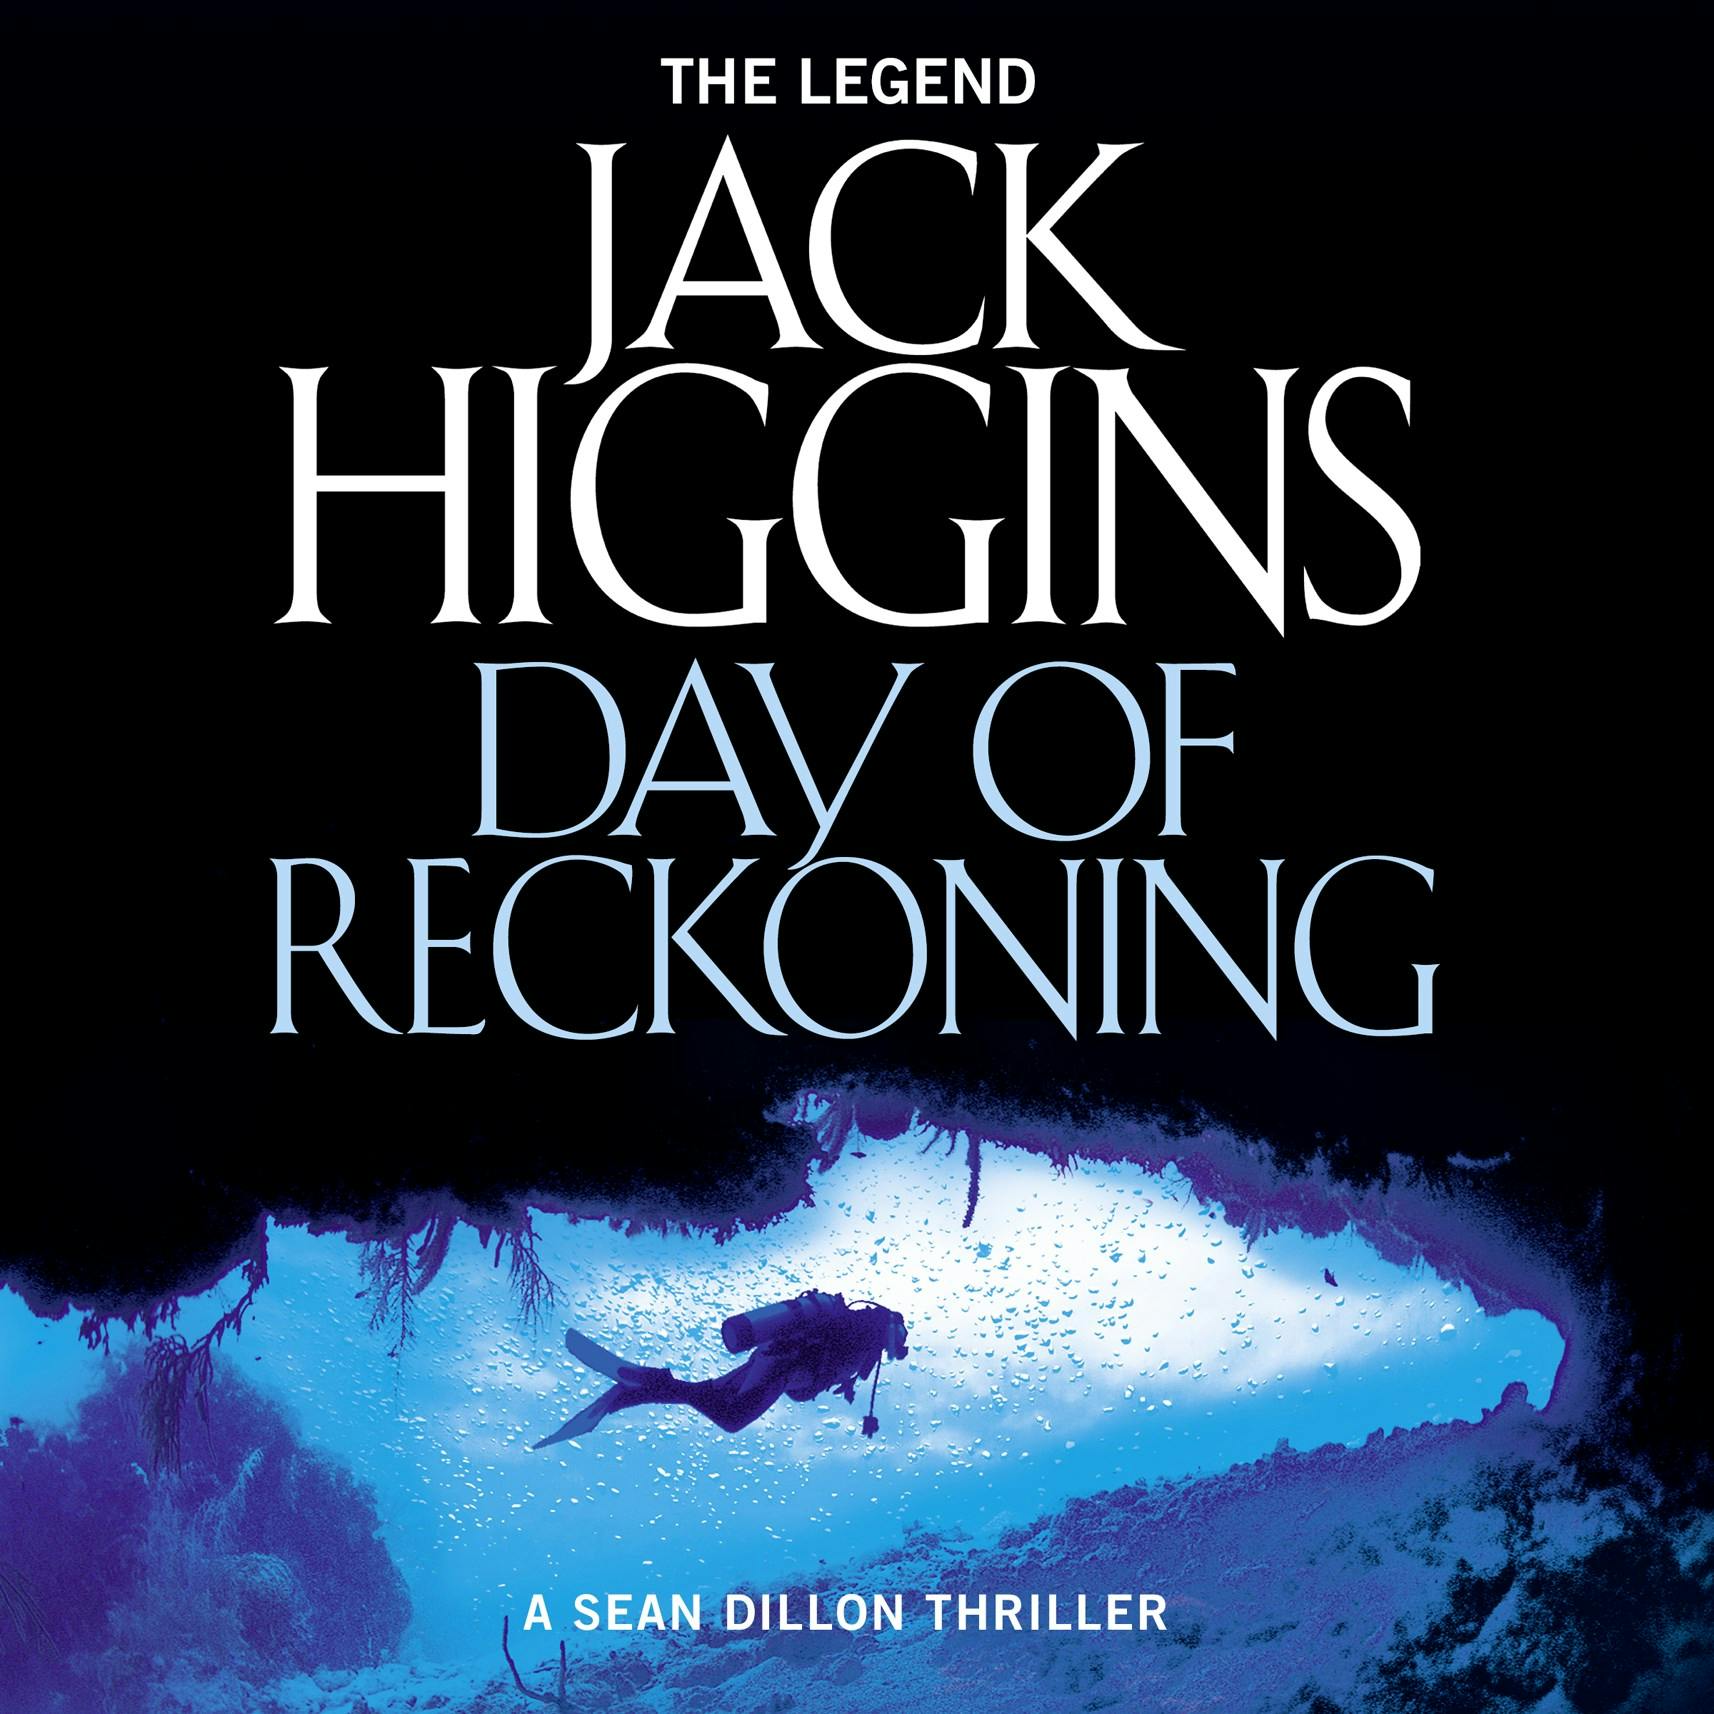 Day of Reckoning - Jack Higgins